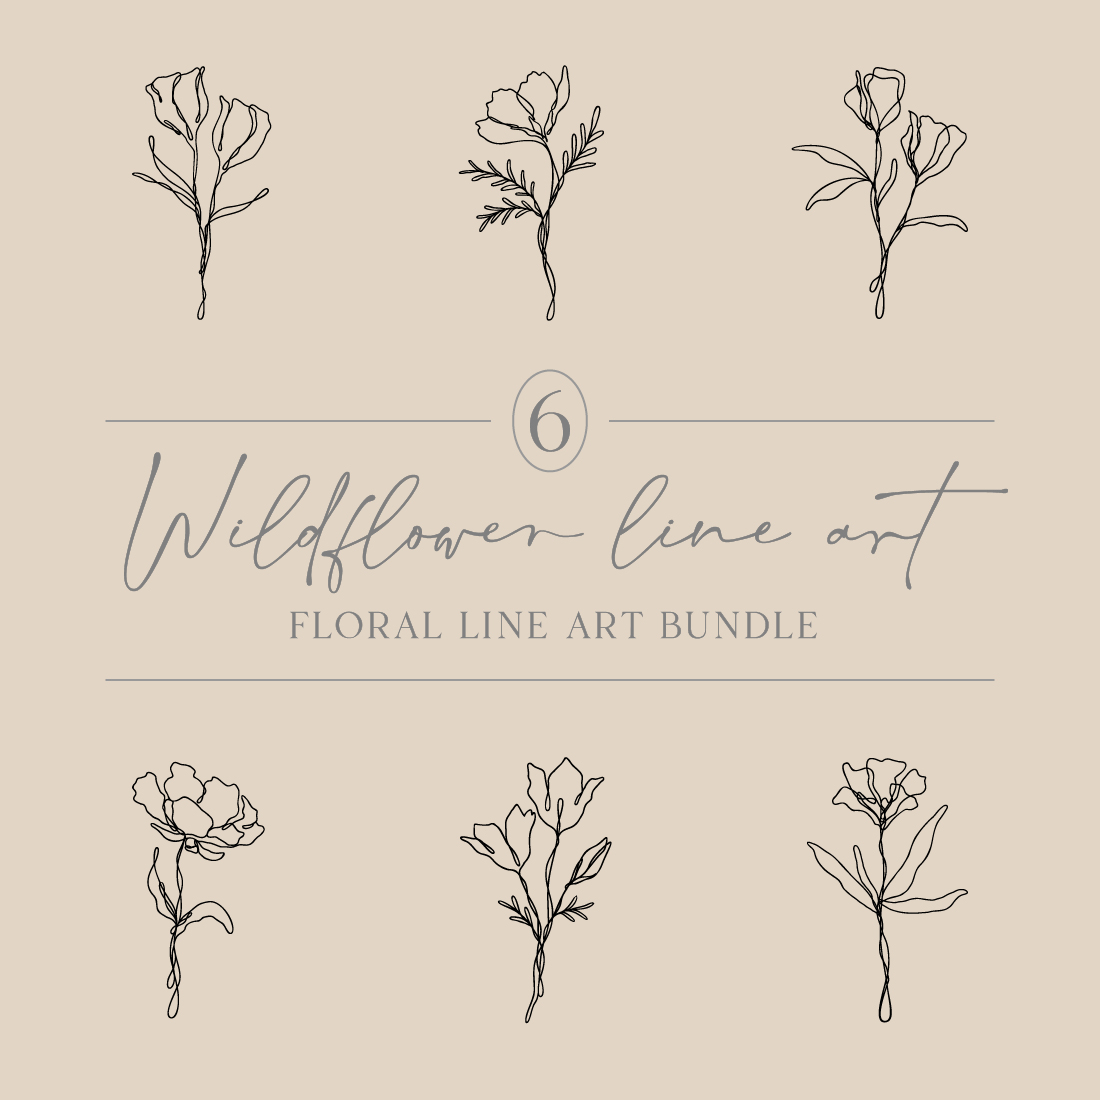 6 Floral Line Art Bundle | Continuous Line Wildflower Design Set cover image.